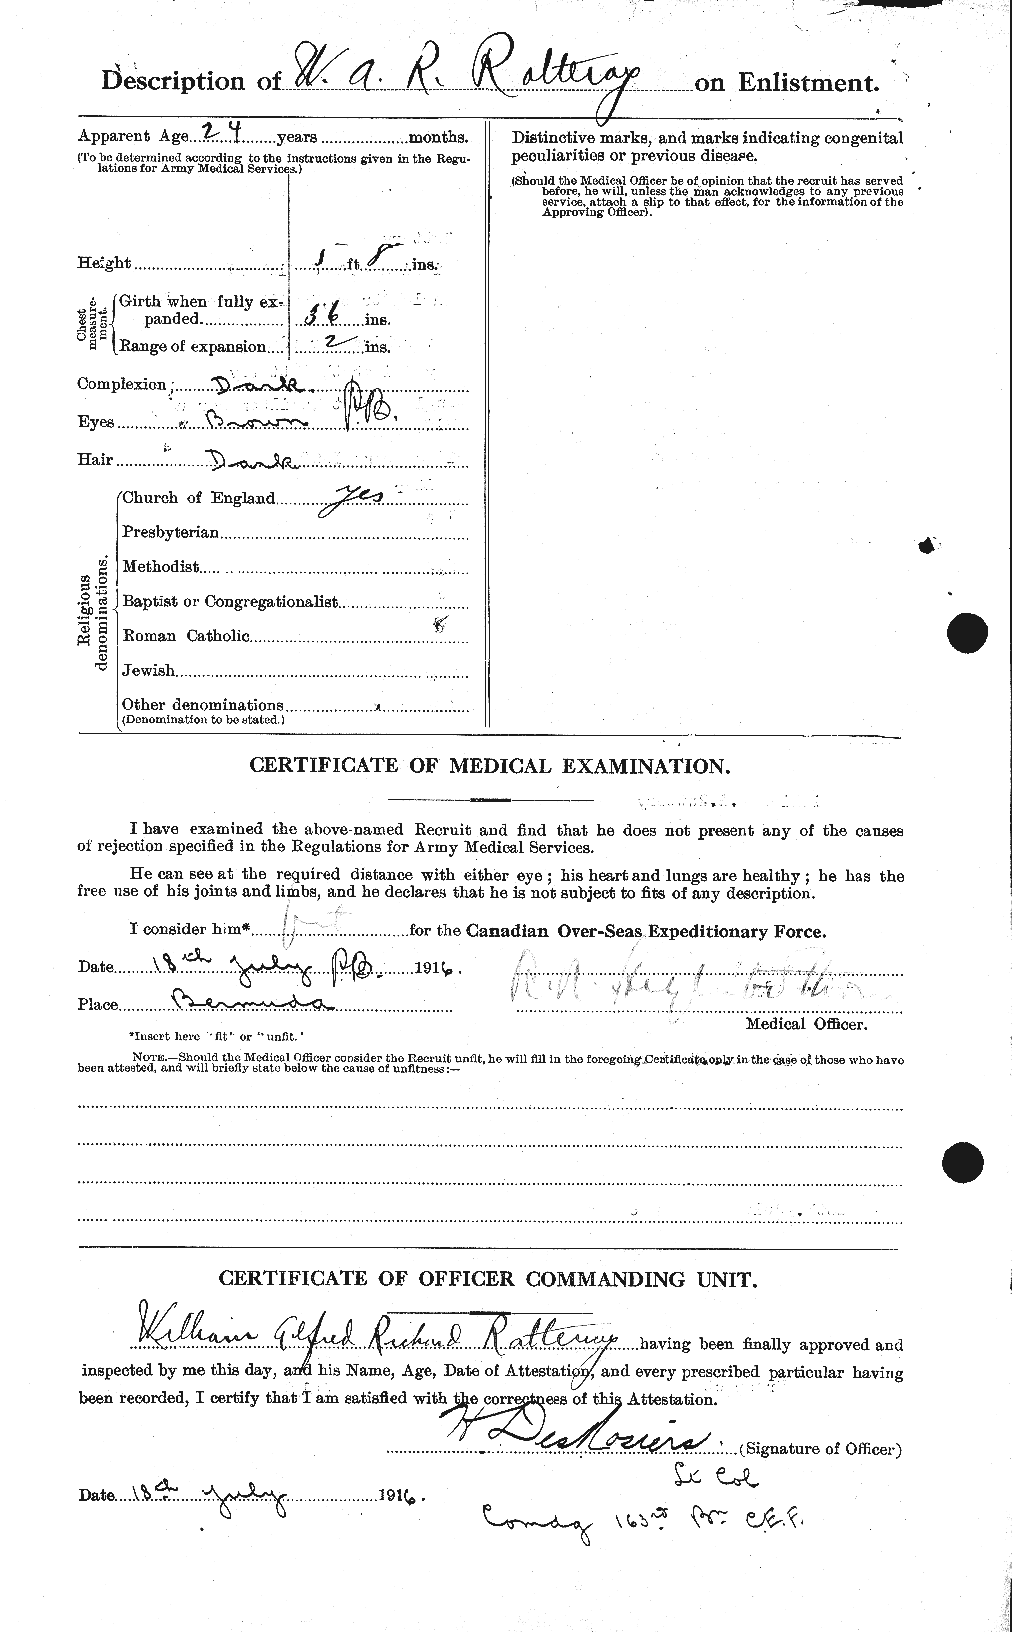 Dossiers du Personnel de la Première Guerre mondiale - CEC 595672b